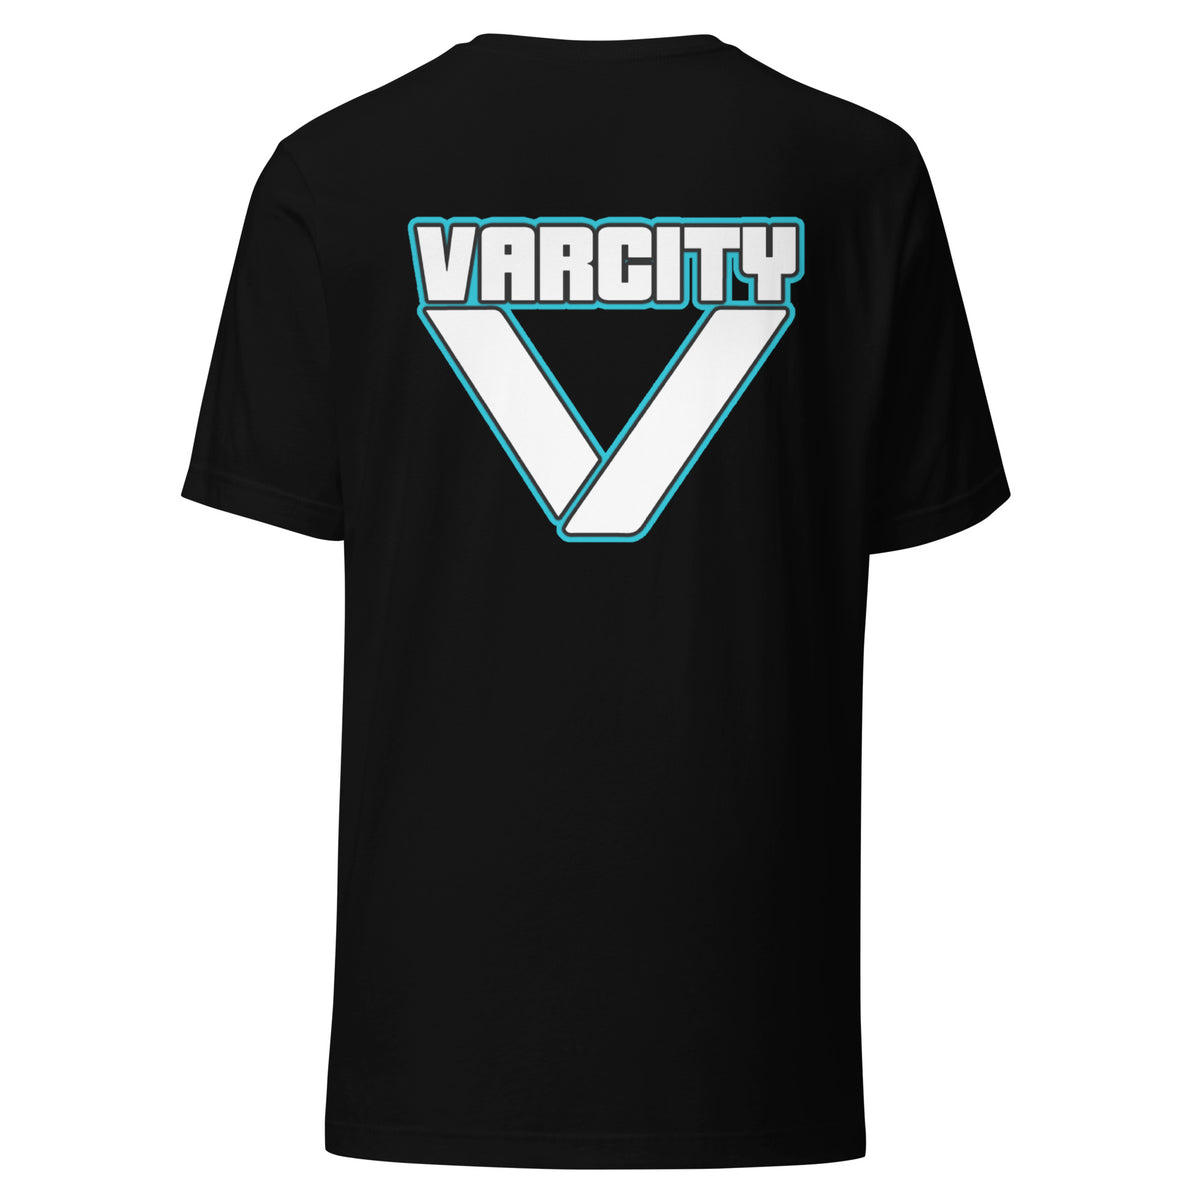 Varcity Unltd Street Logo Unisex Tee Black-Teal